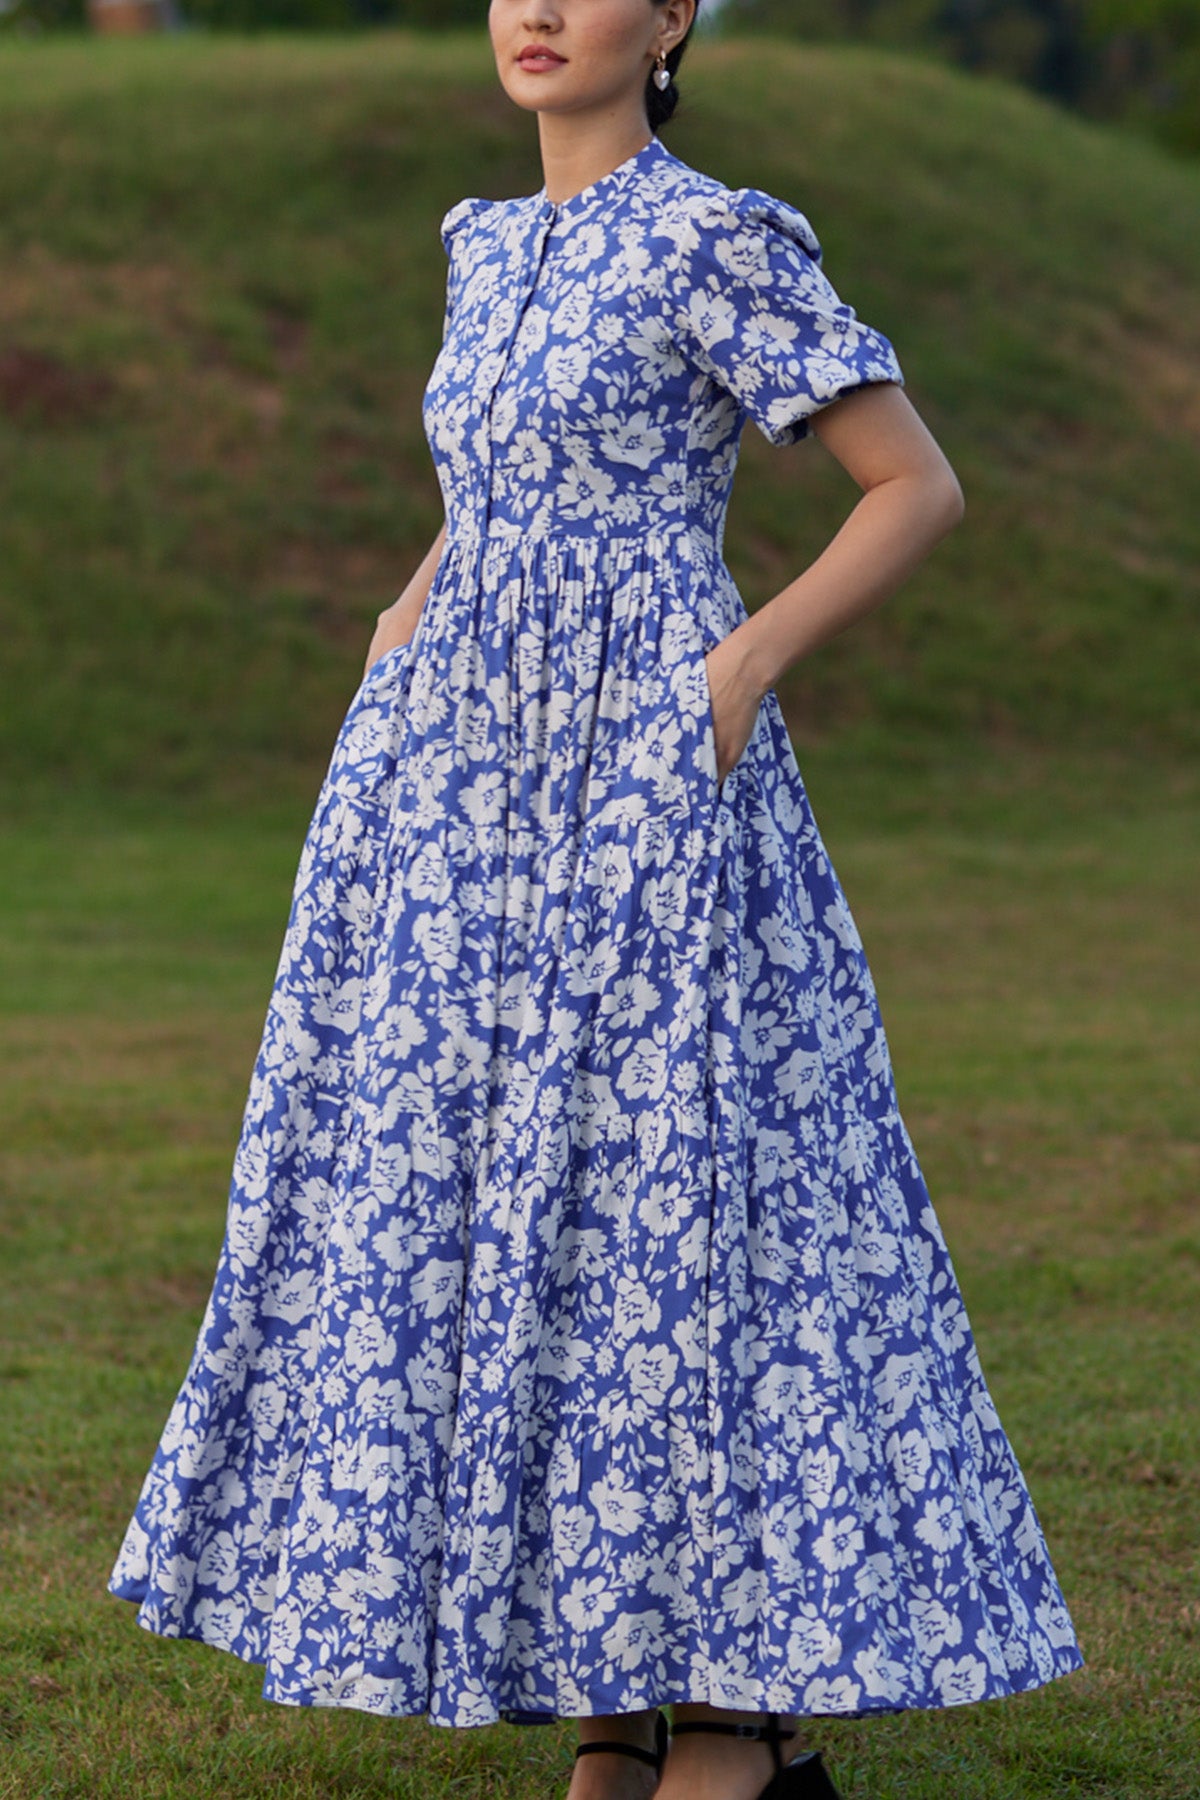 Cecilia Floral Midi Dress